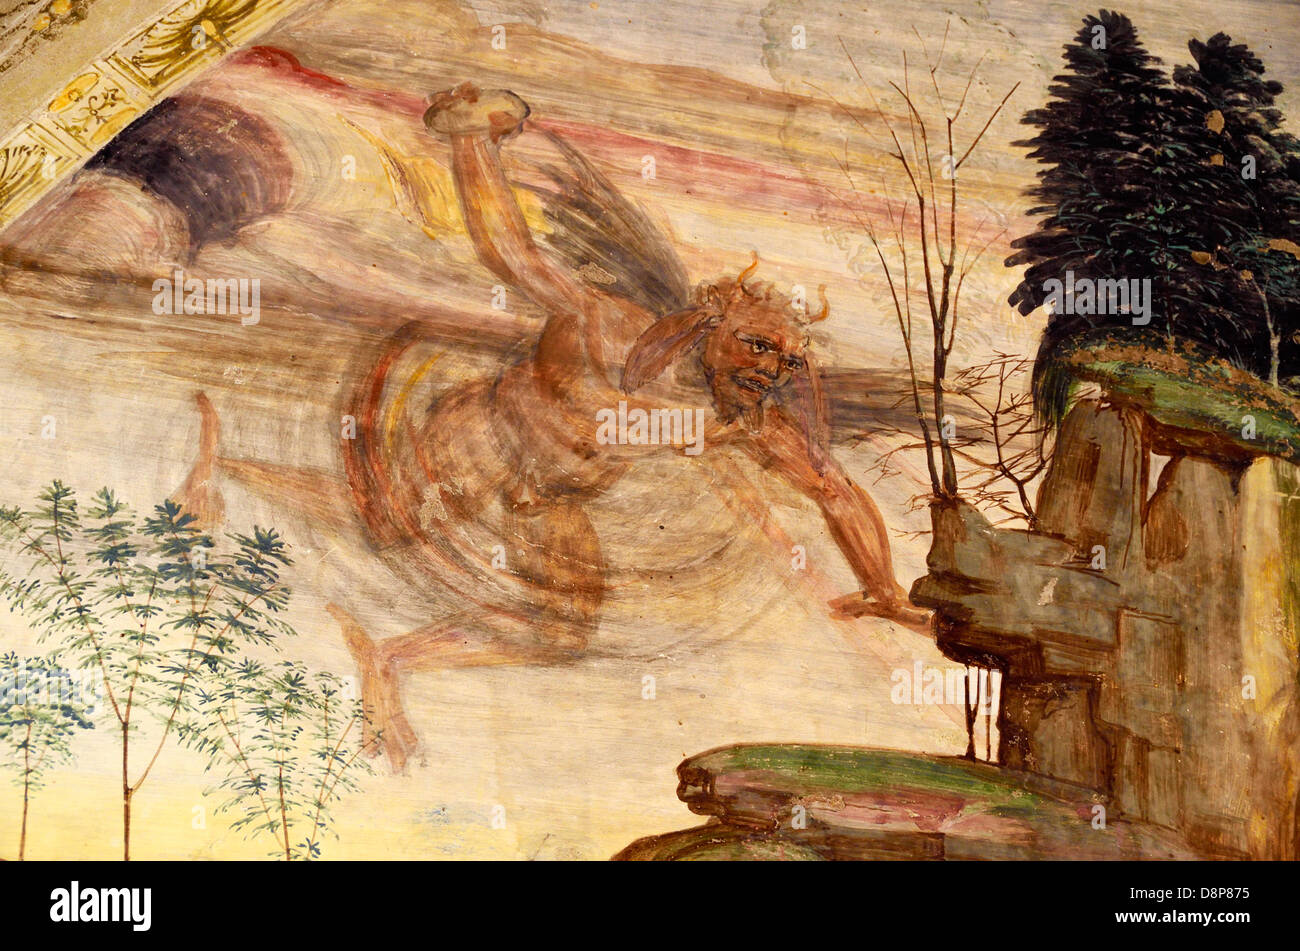 La pittura di satana nel chiostro dell'Abbazia di Monte Oliveto Maggiore, Toscana, Italia. Foto Stock